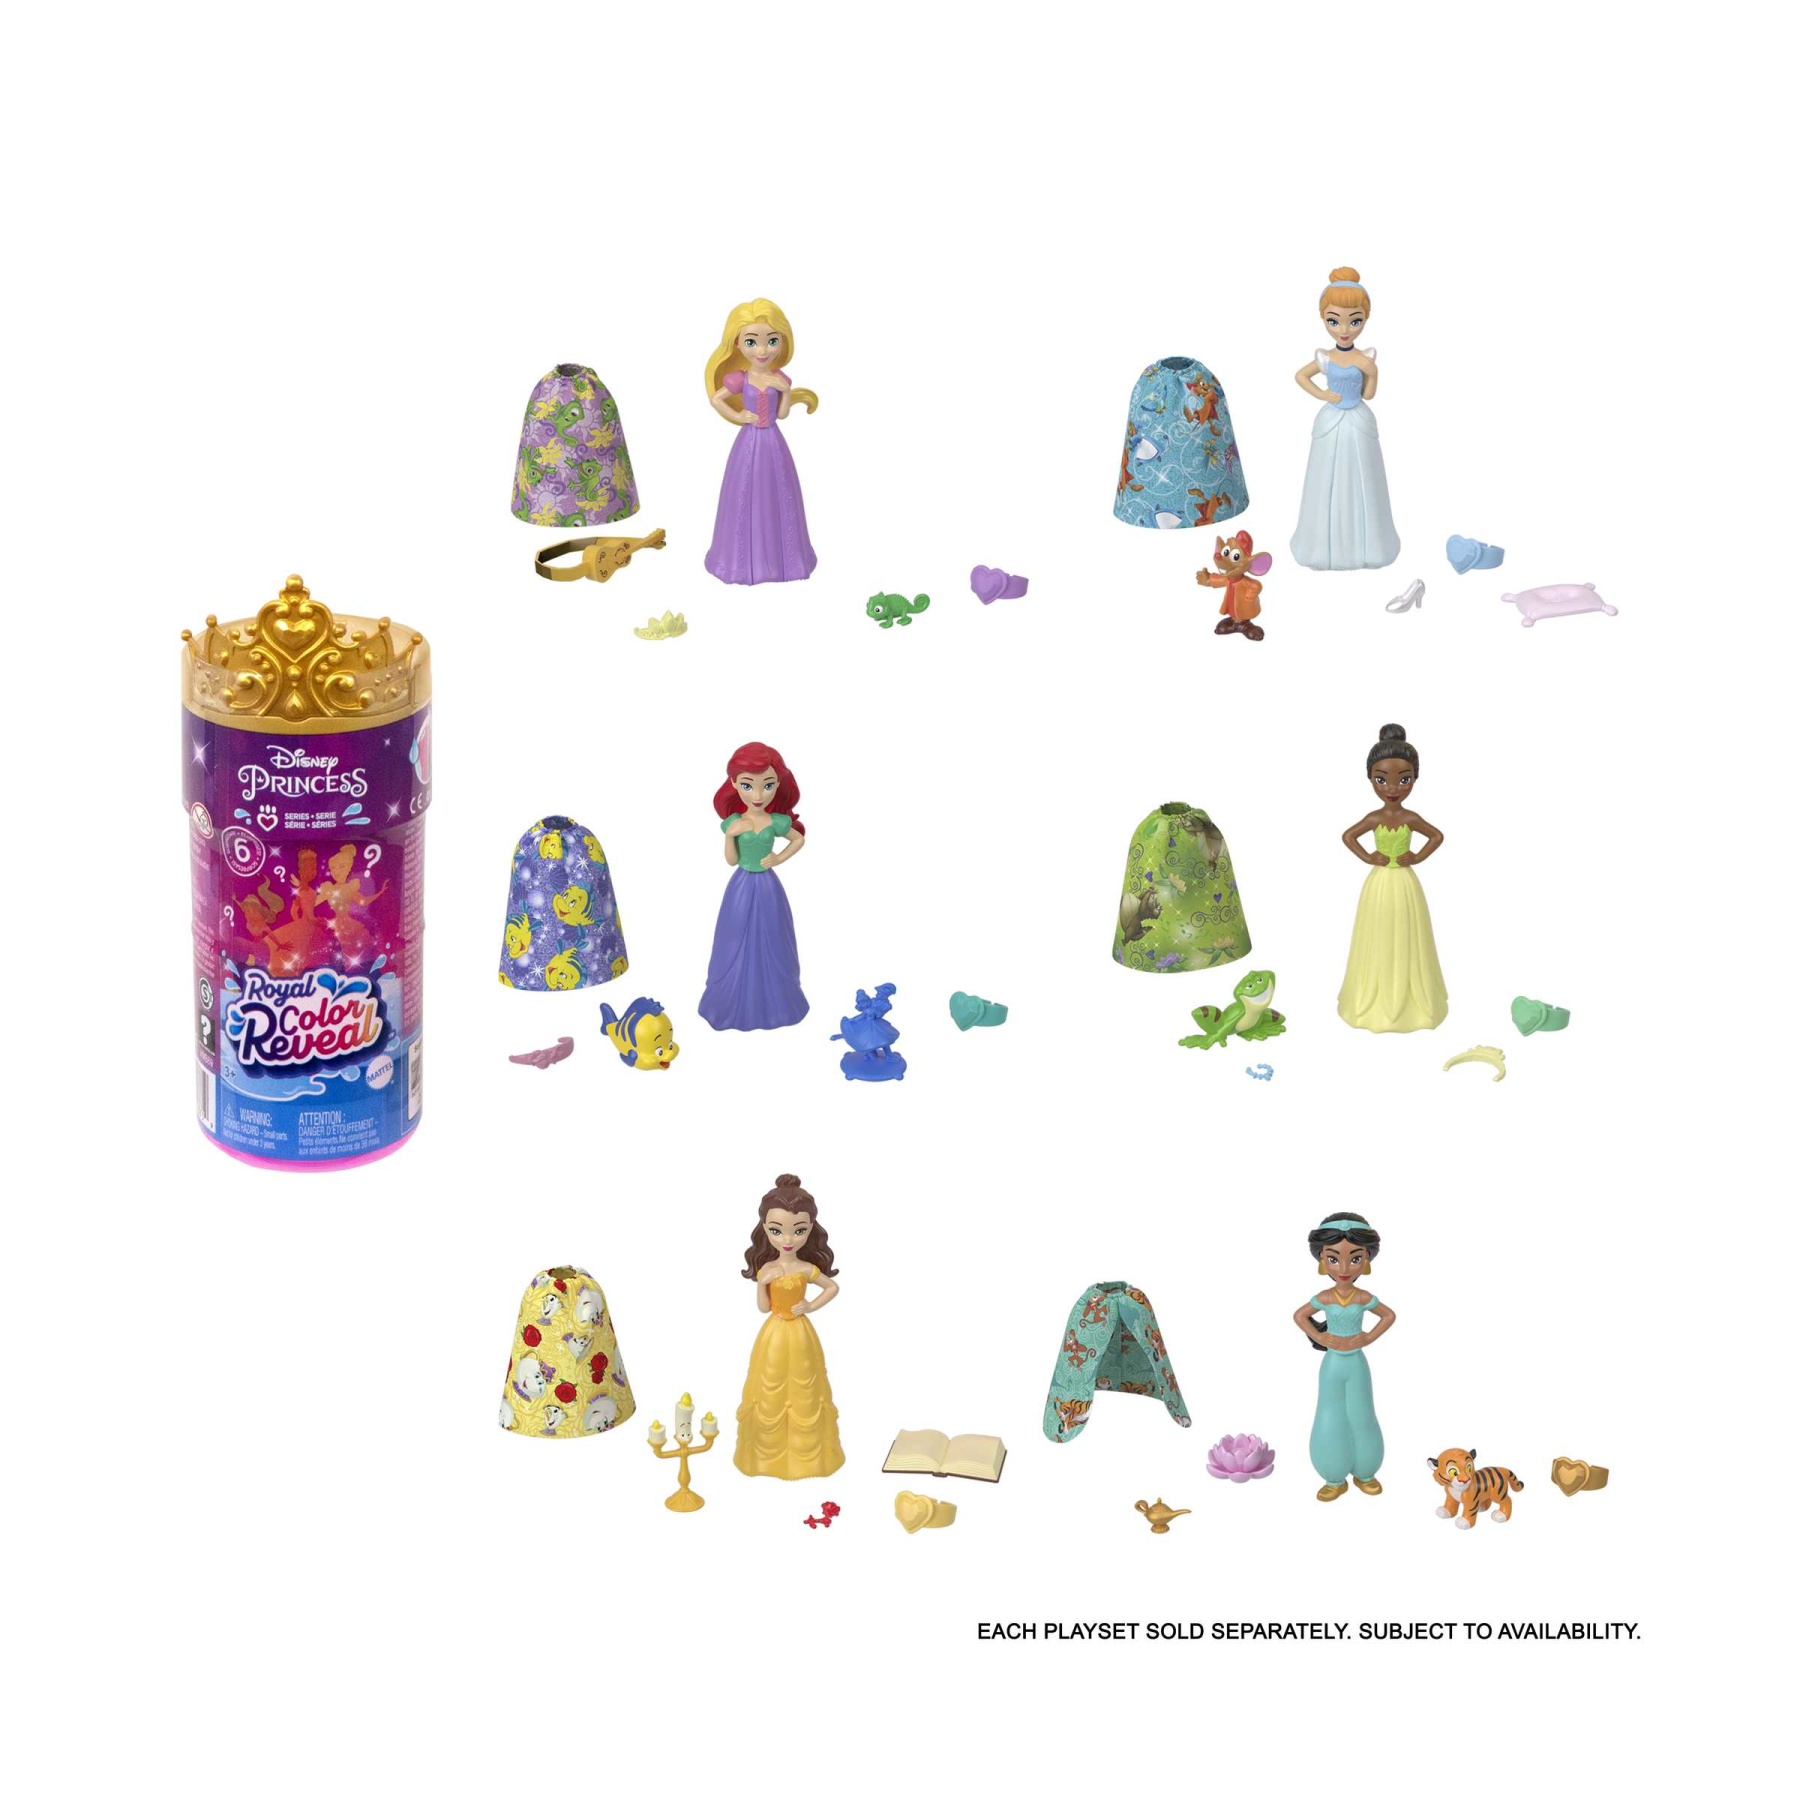 Disney princess - royal color reveal, bambola con 6 sorprese da scoprire tra cui un personaggio, ispirata ai film disney, giocattolo per bambini, 3+ anni, hmb69 - 2567, DISNEY PRINCESS